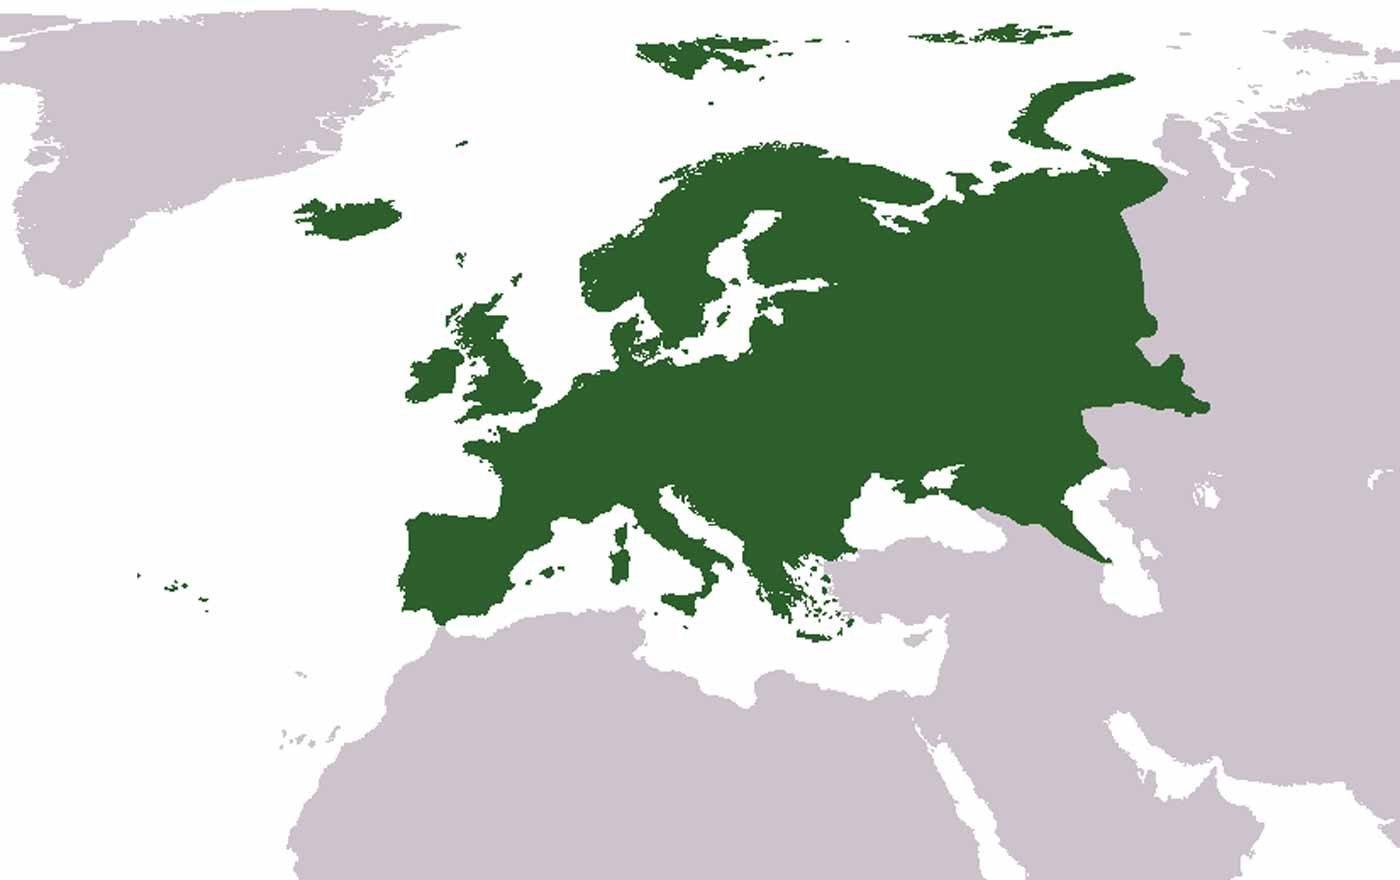 Minderheiten in Europa ergeben eine "Mehrheit der Fantasie", meinte EU-Kommissar Johannes Hahn beim Symposium in Wien. Grafik: wikimedia/cumhur